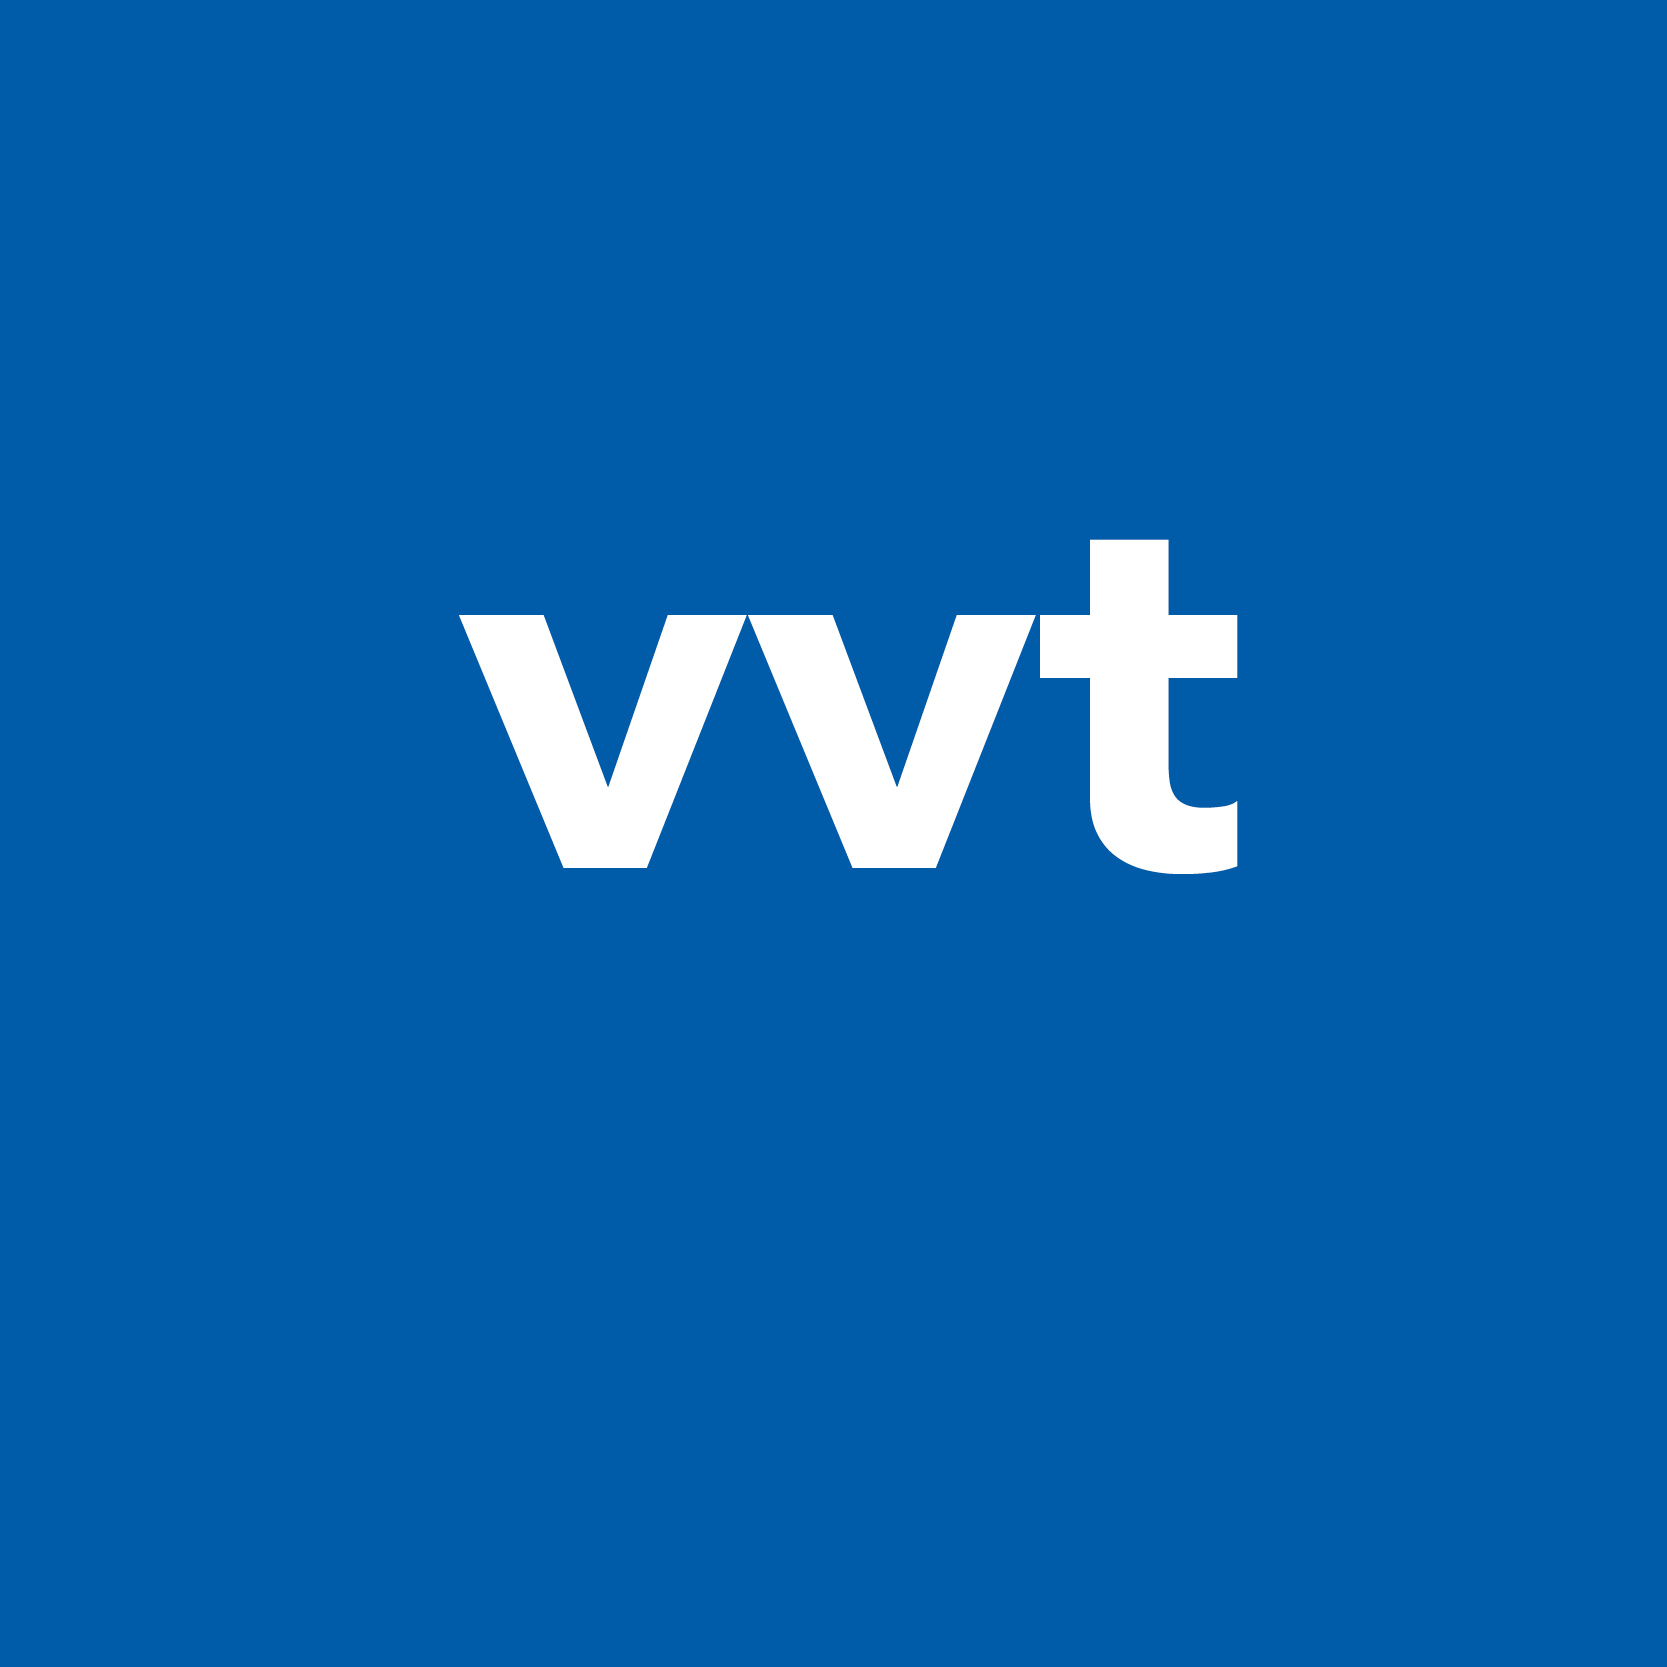 VVT-netwerk